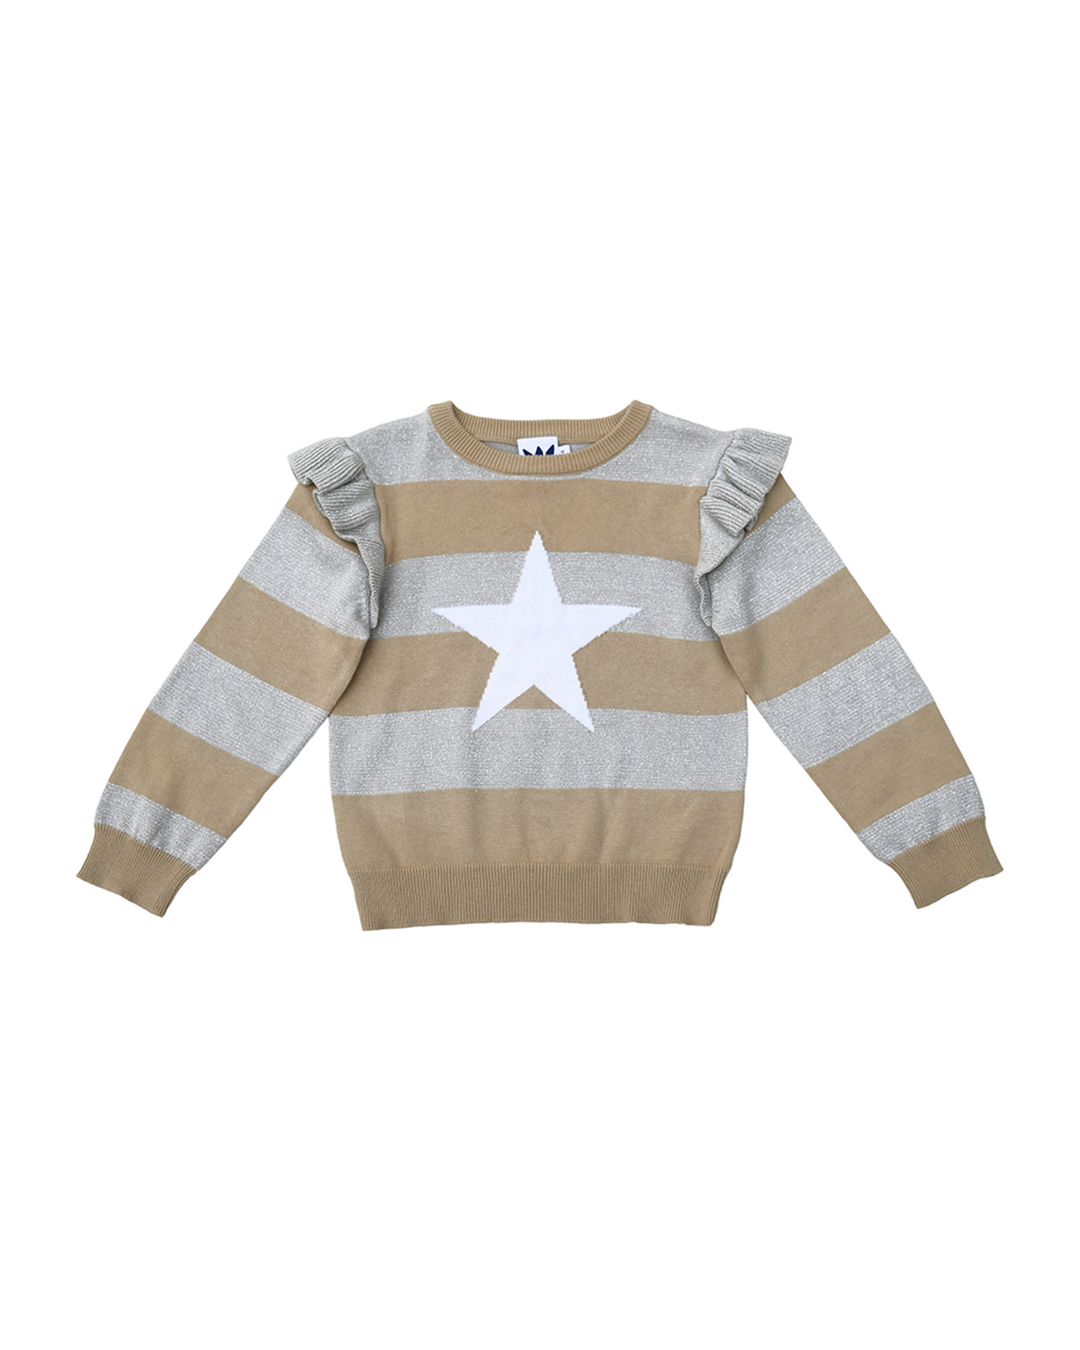 Suéter de rayas plateadas y beige con estrella blanca